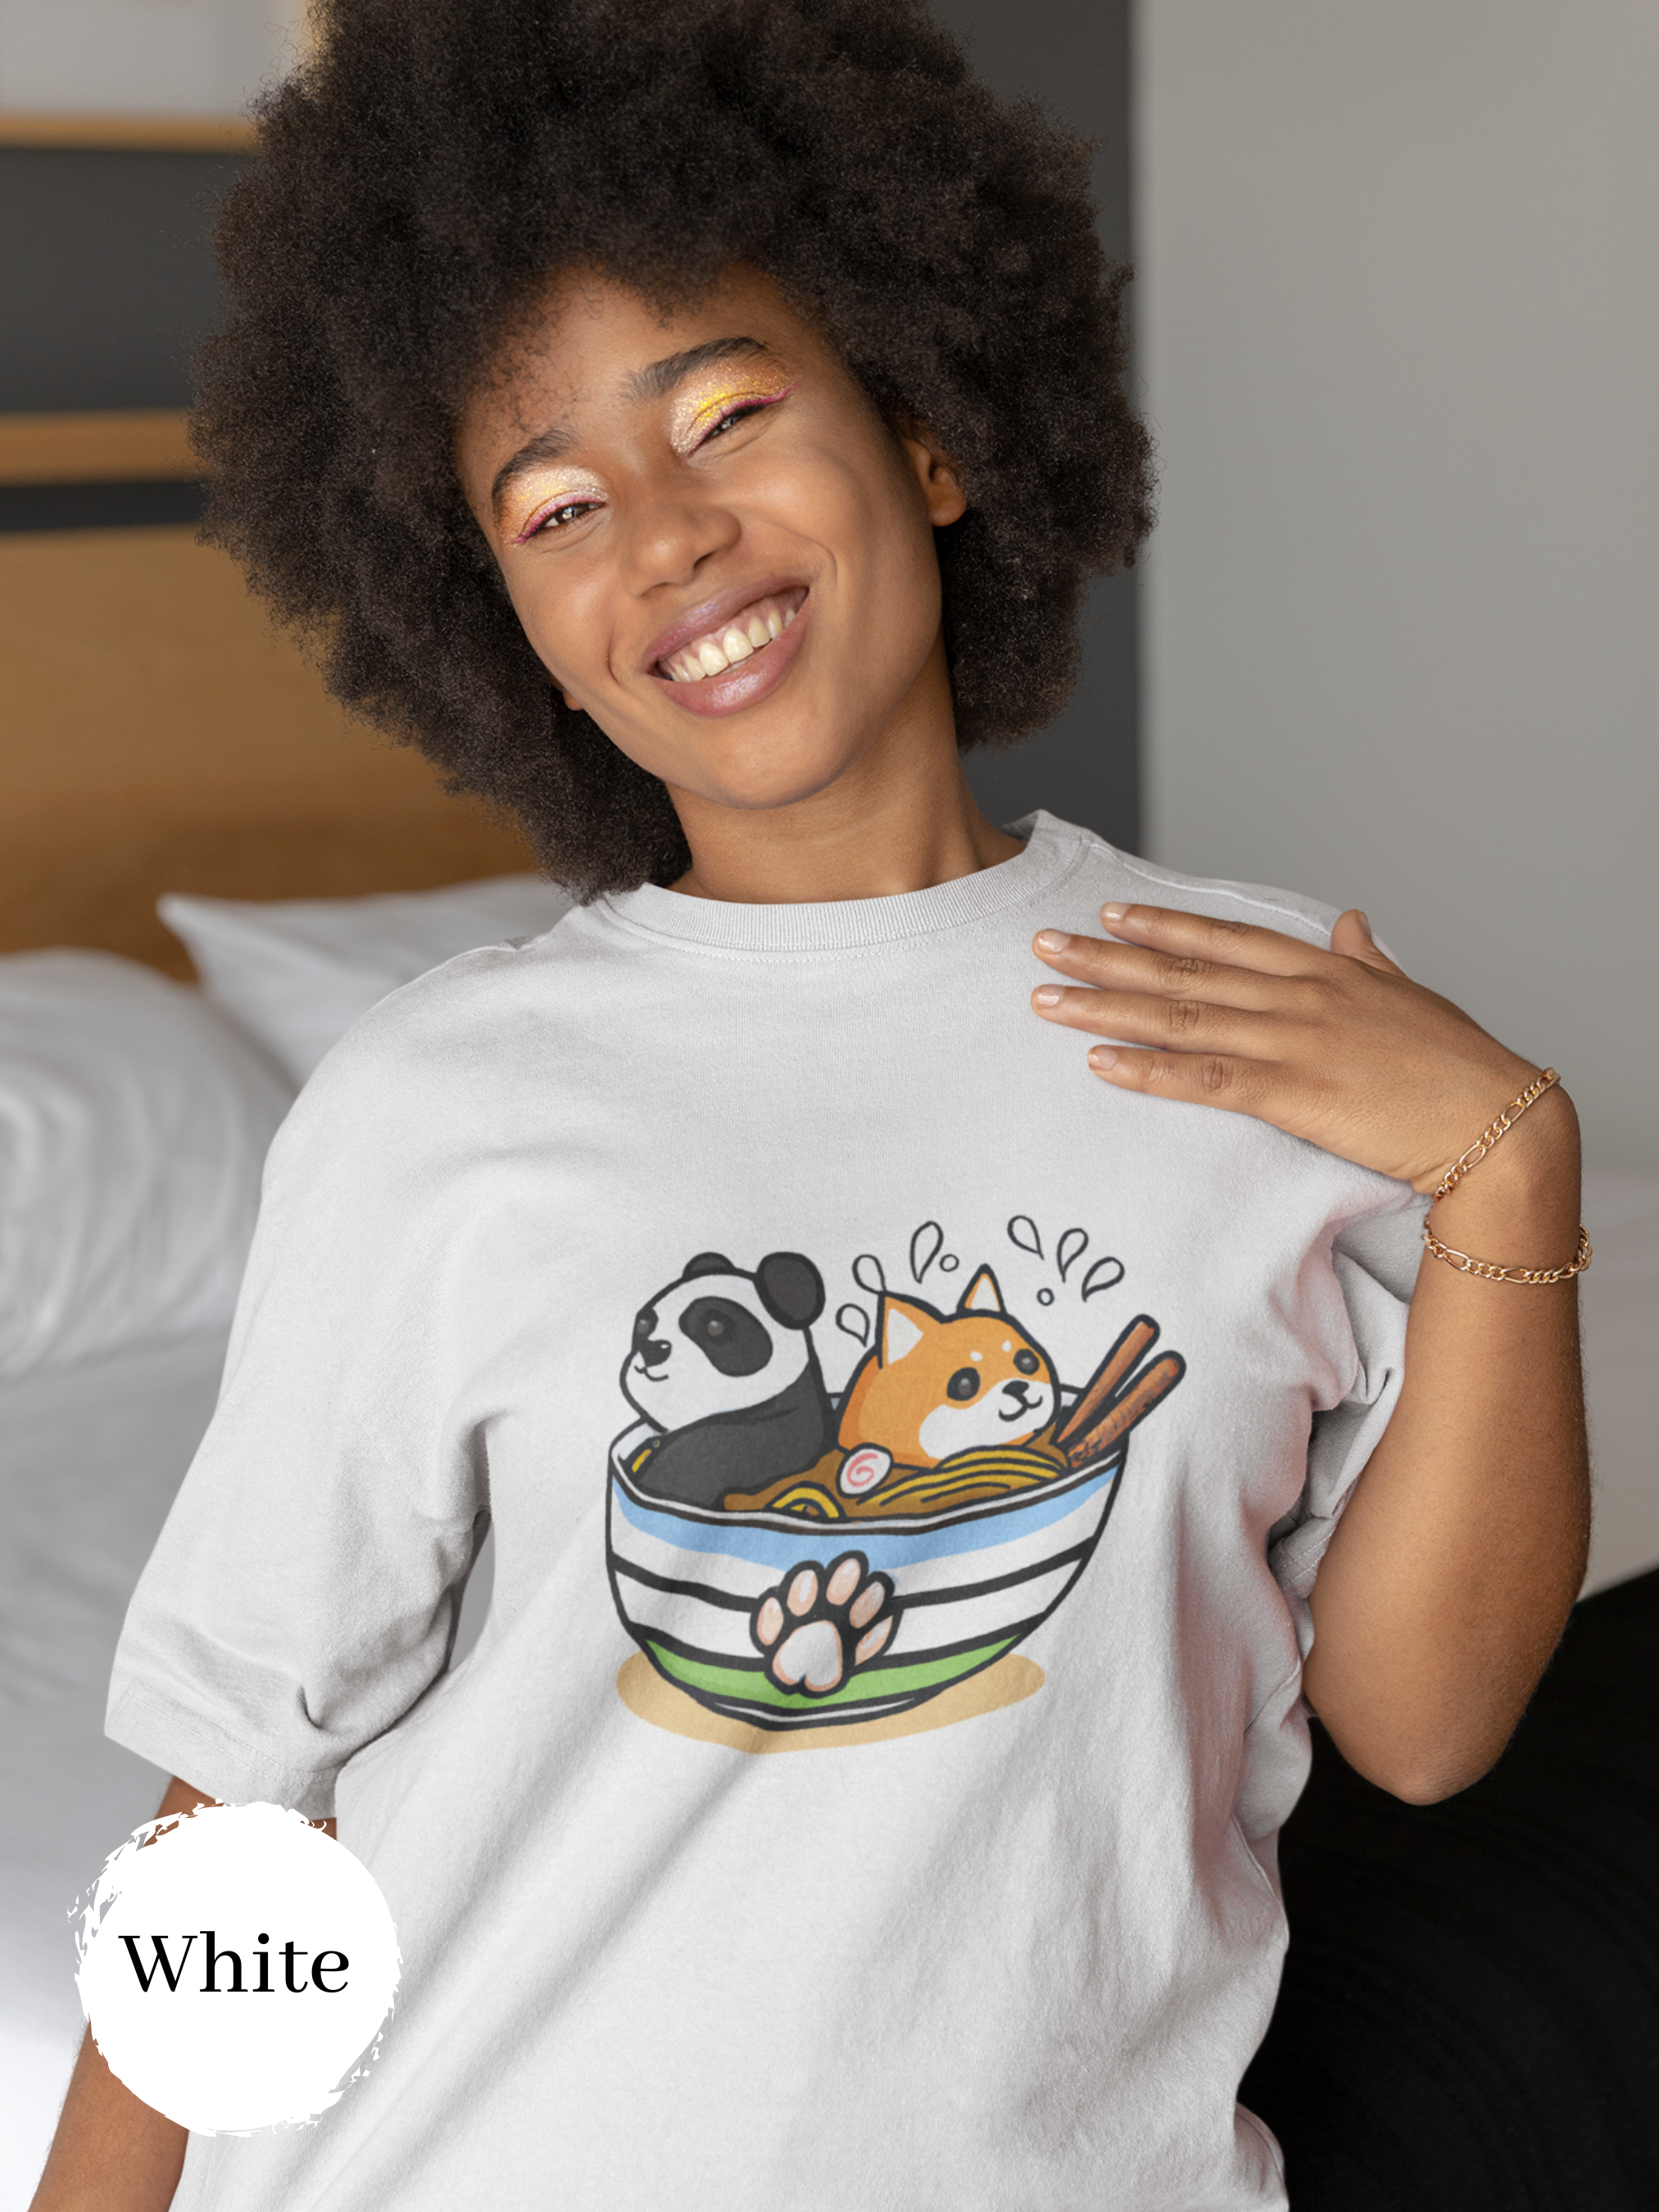 Ramen T-Shirt with Panda and Shiba Inu in a Bowl: Japanese Foodie Shirt with Ramen Art